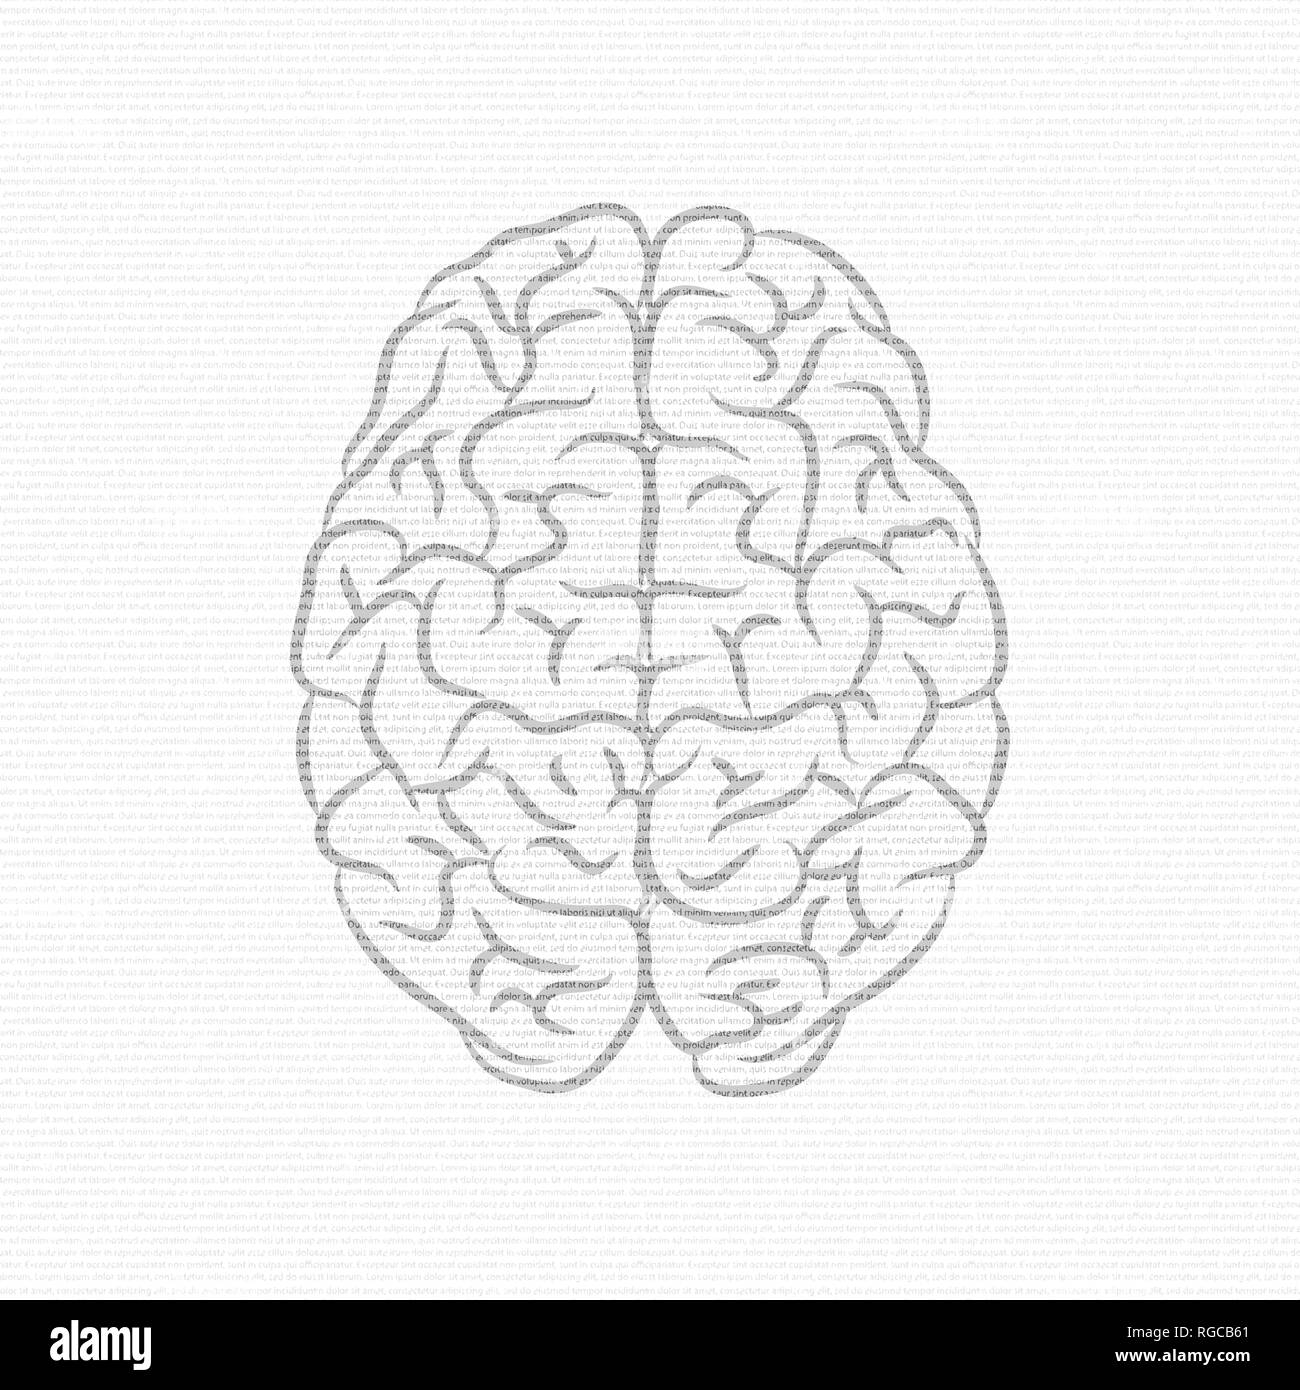 Weißer Hintergrund mit Mustertext und Dunkelgrau menschliche Gehirn Silhouette Stock Vektor